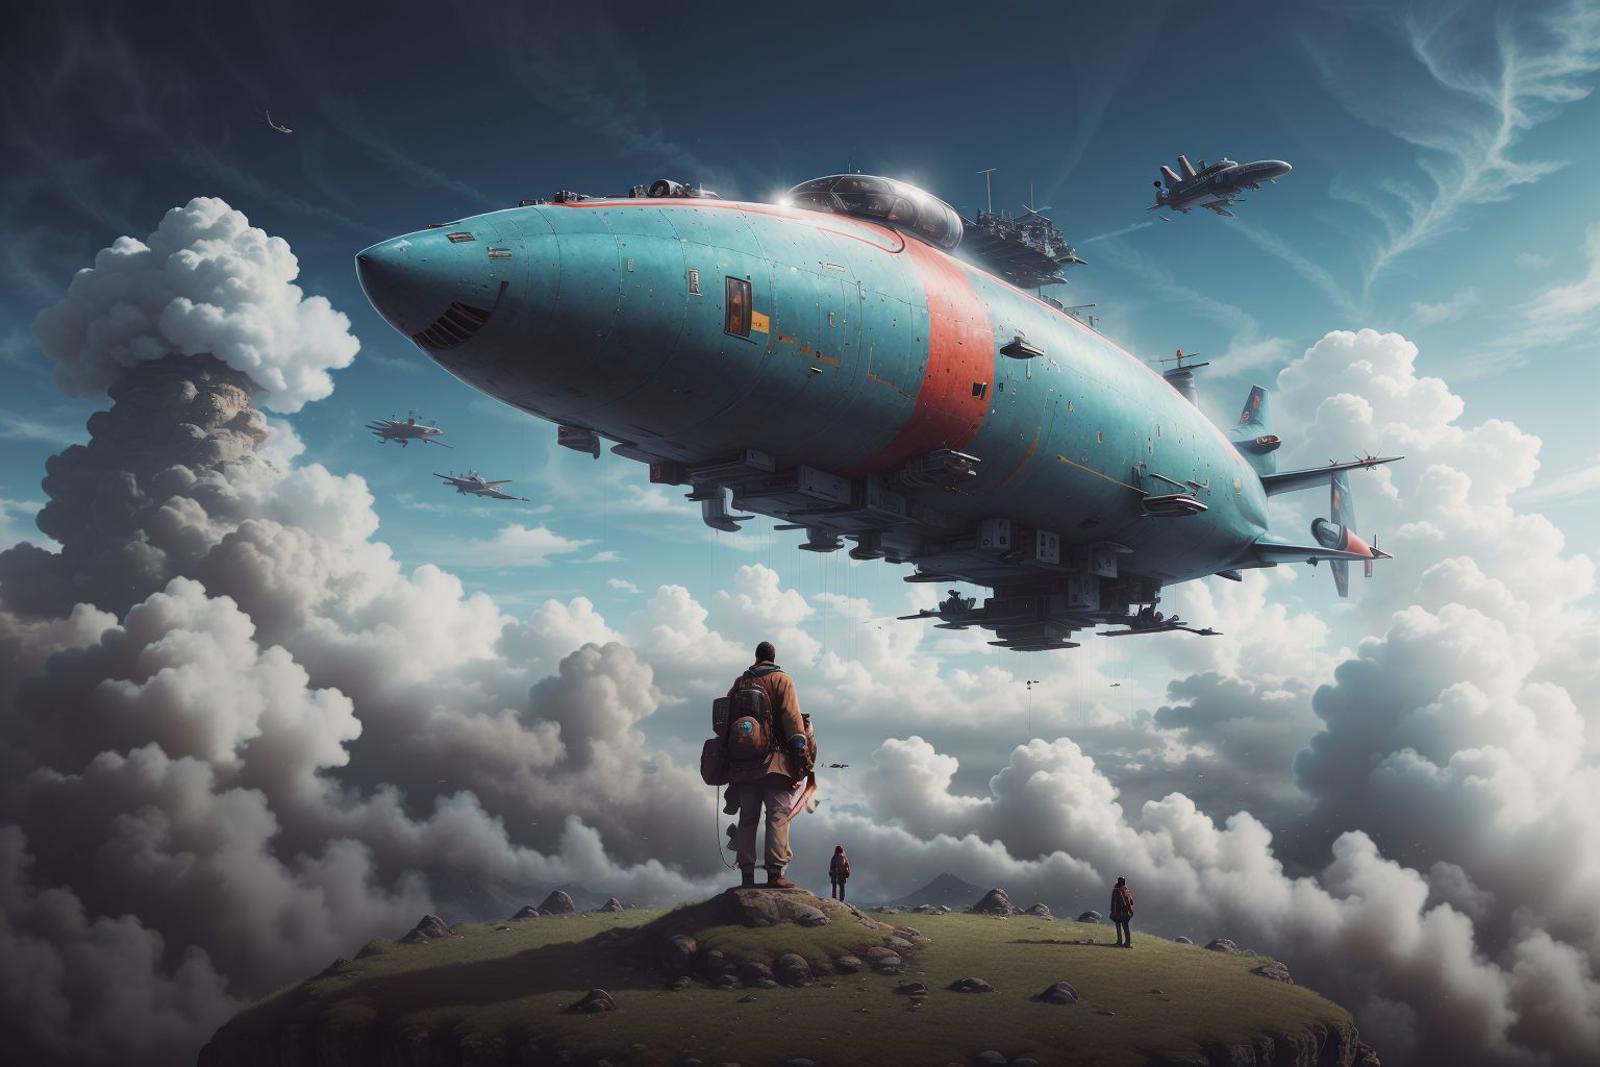  巨大飞空艇  Giant airship image by ChaosOrchestrator